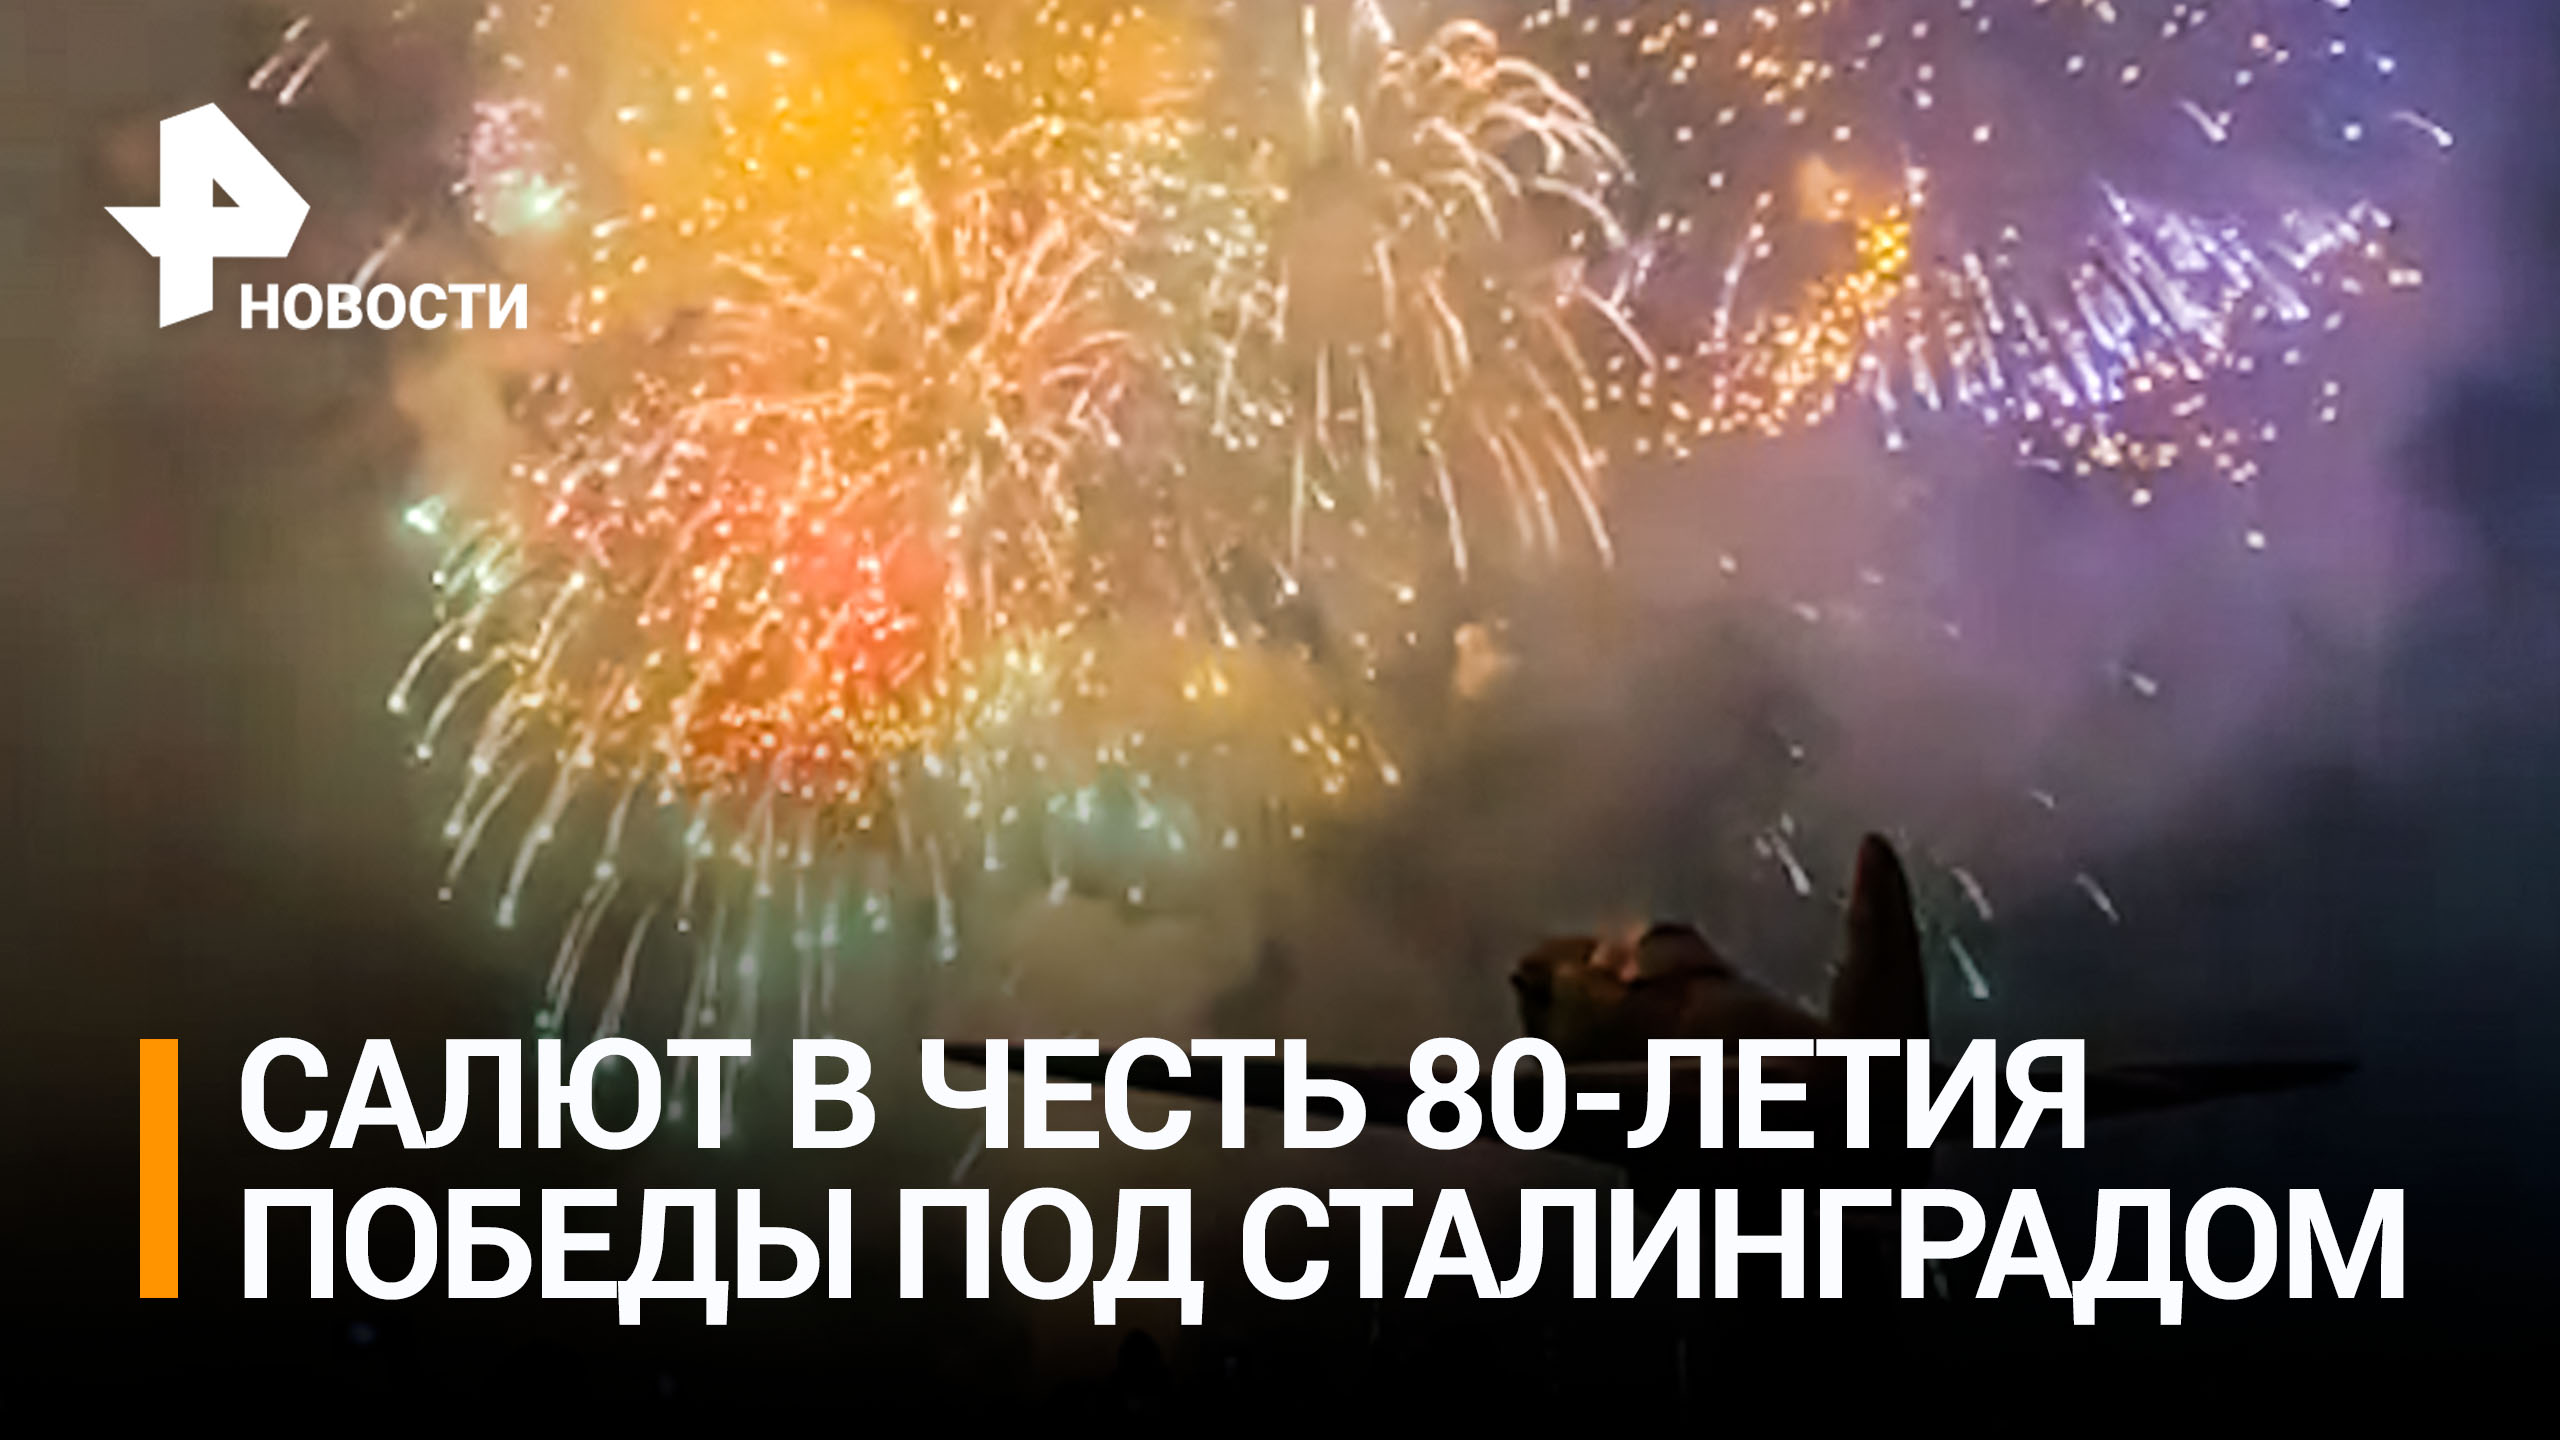 В Волгограде запустили салют в честь 80-летия победы под Сталинградом / РЕН Новости